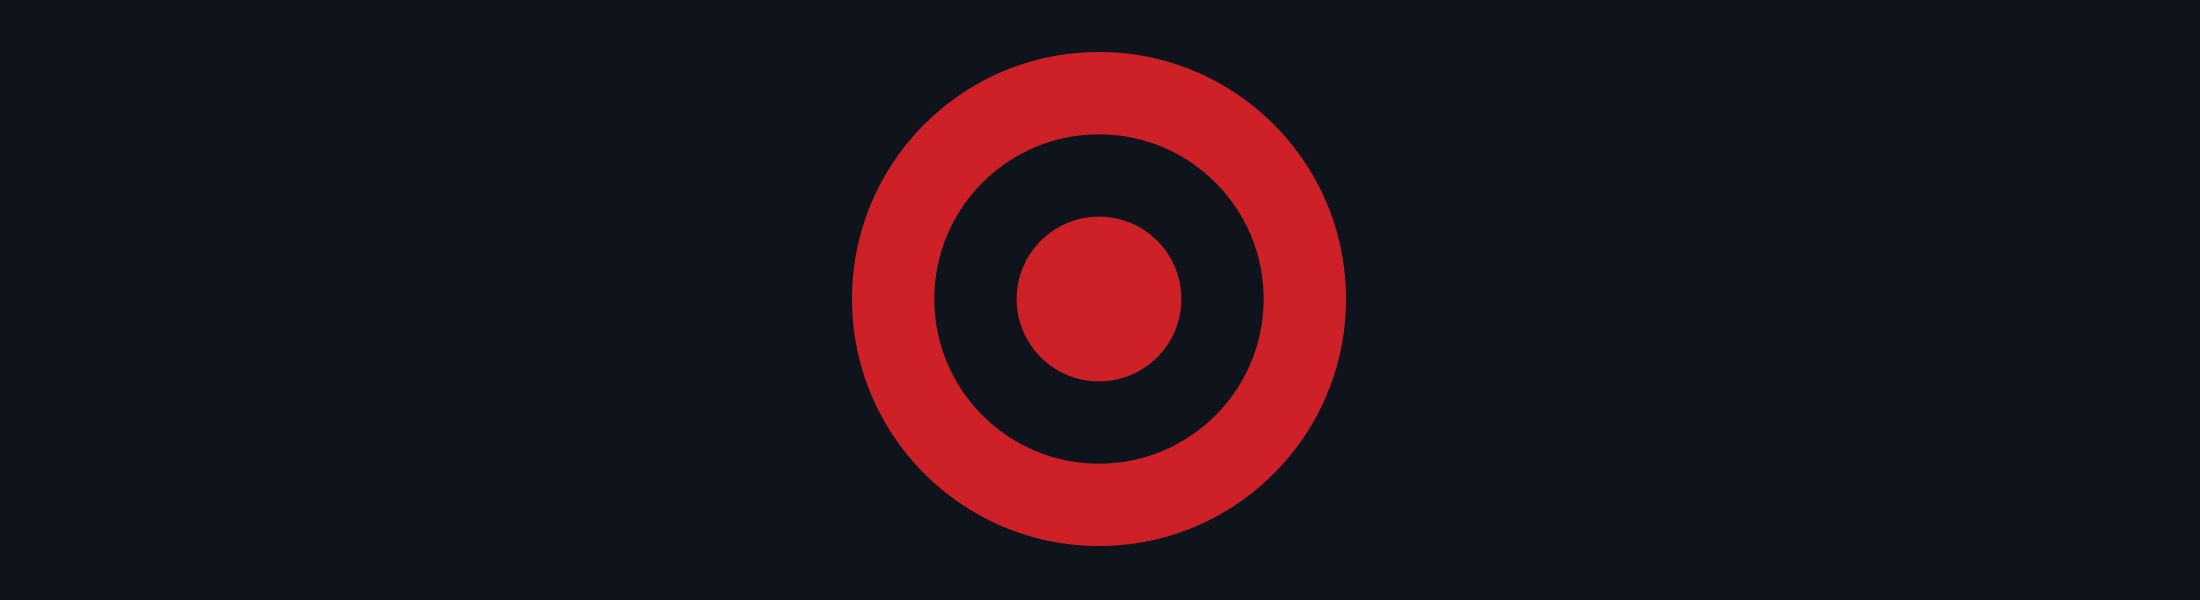 logo-Target-case-studies